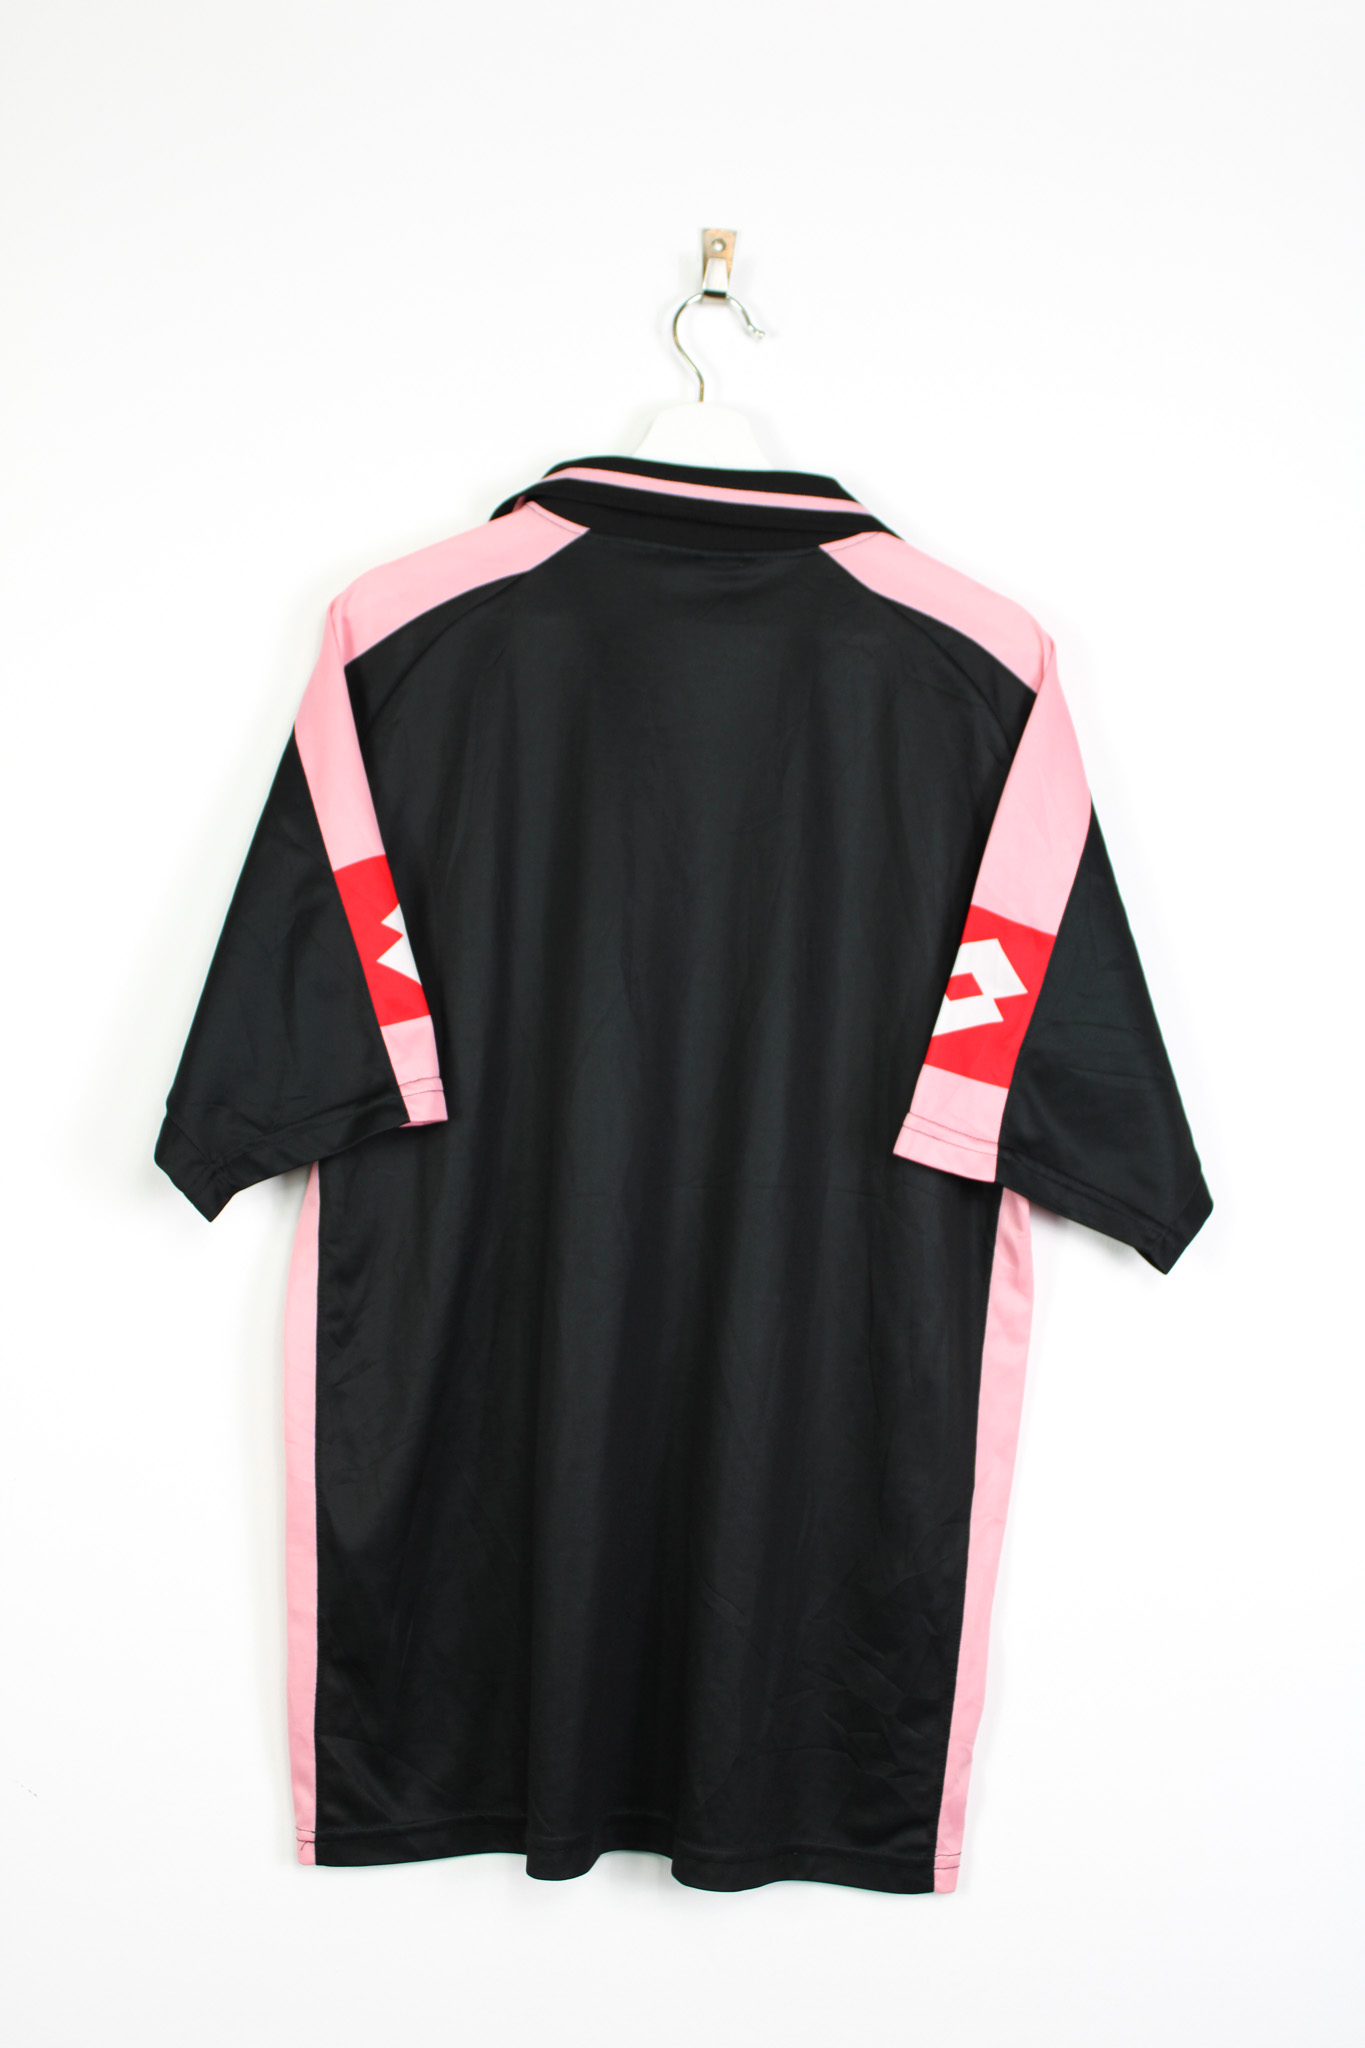 Palermo 2002-03 Away Kit